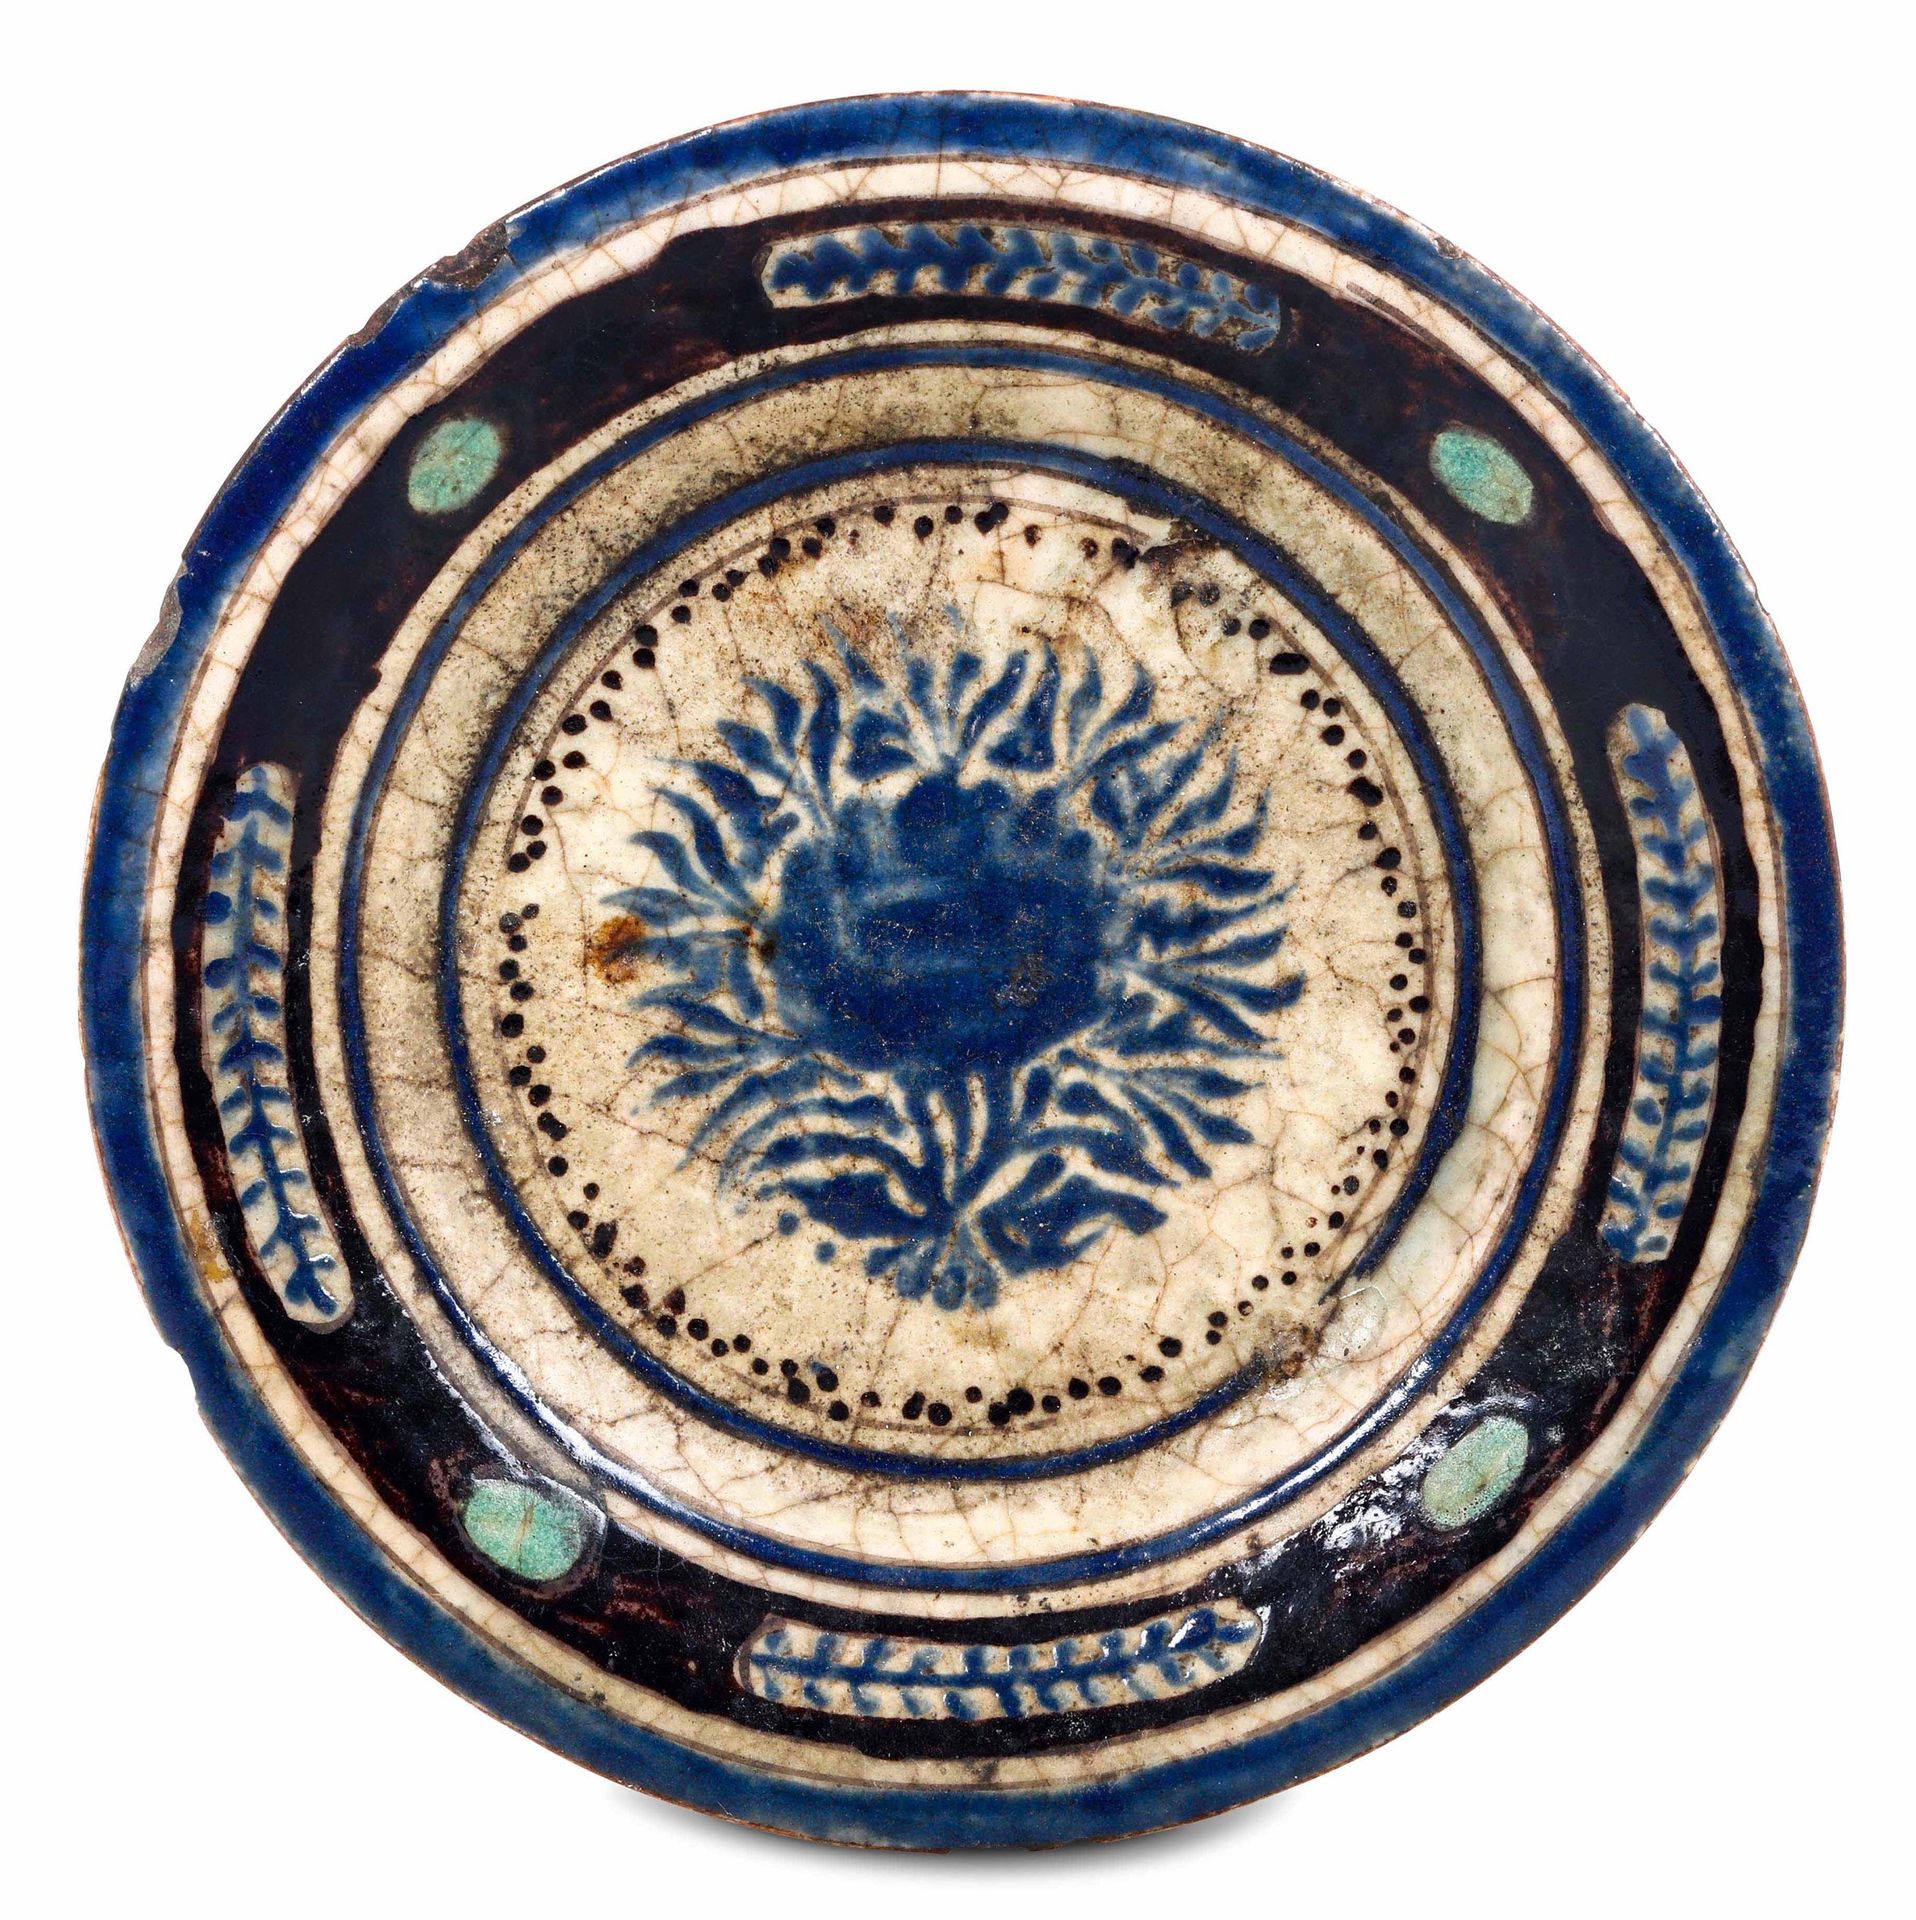 Piatto Siria (?), XIX secolo , 陶瓷上有蓝色和锰色的装饰。品牌：没有。直径19.2厘米。保存情况：边缘有轻微的剥落和裂纹